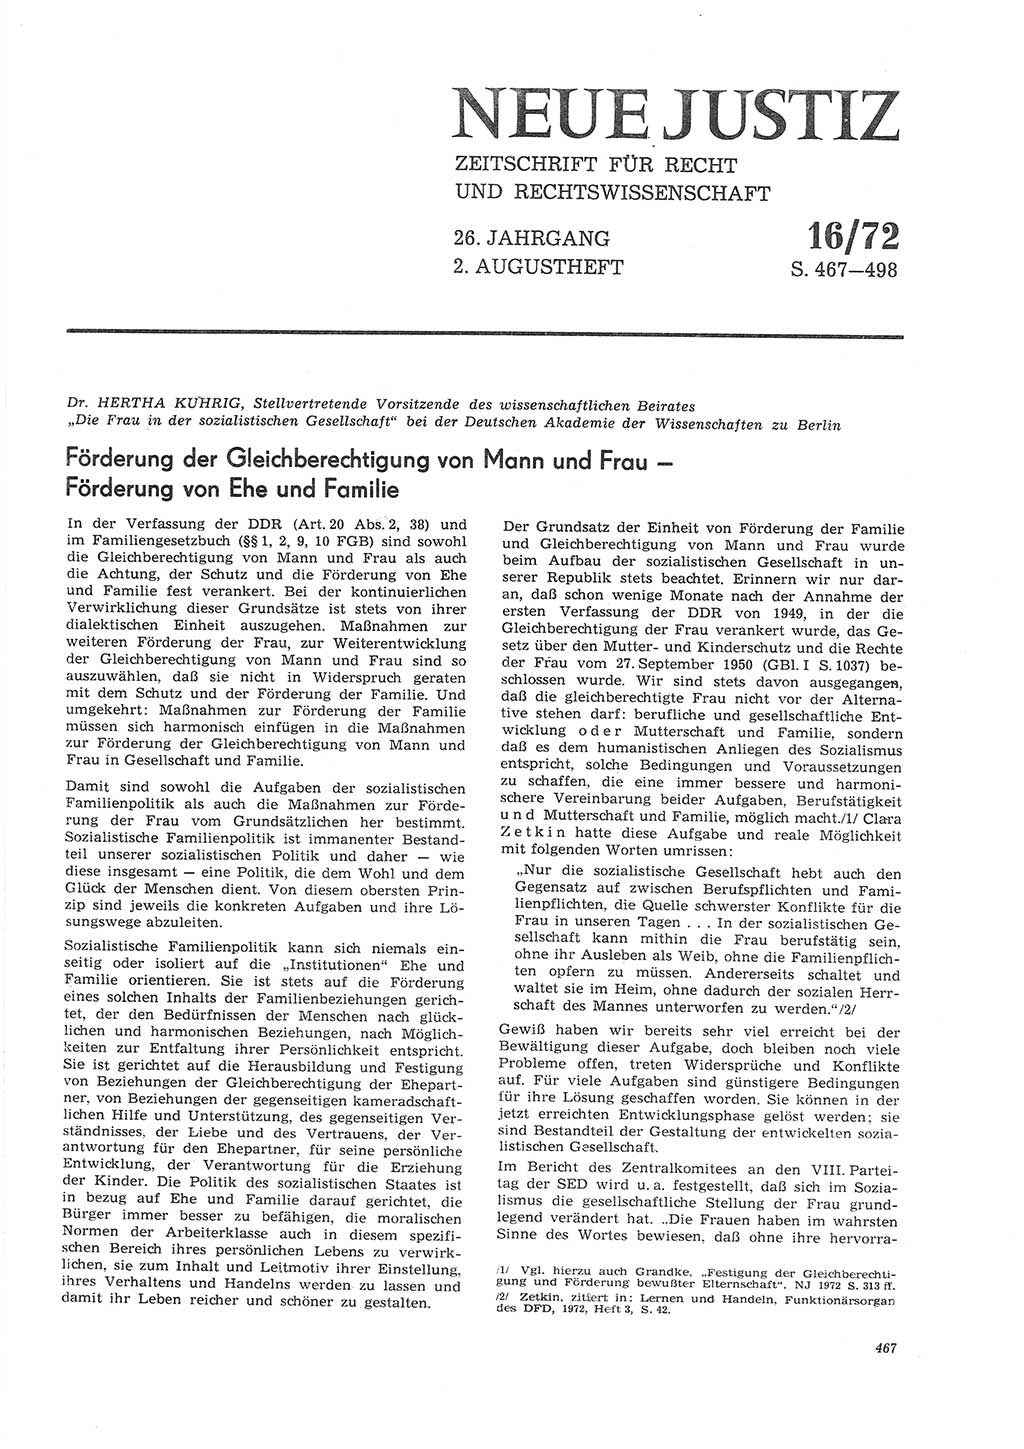 Neue Justiz (NJ), Zeitschrift für Recht und Rechtswissenschaft [Deutsche Demokratische Republik (DDR)], 26. Jahrgang 1972, Seite 467 (NJ DDR 1972, S. 467)